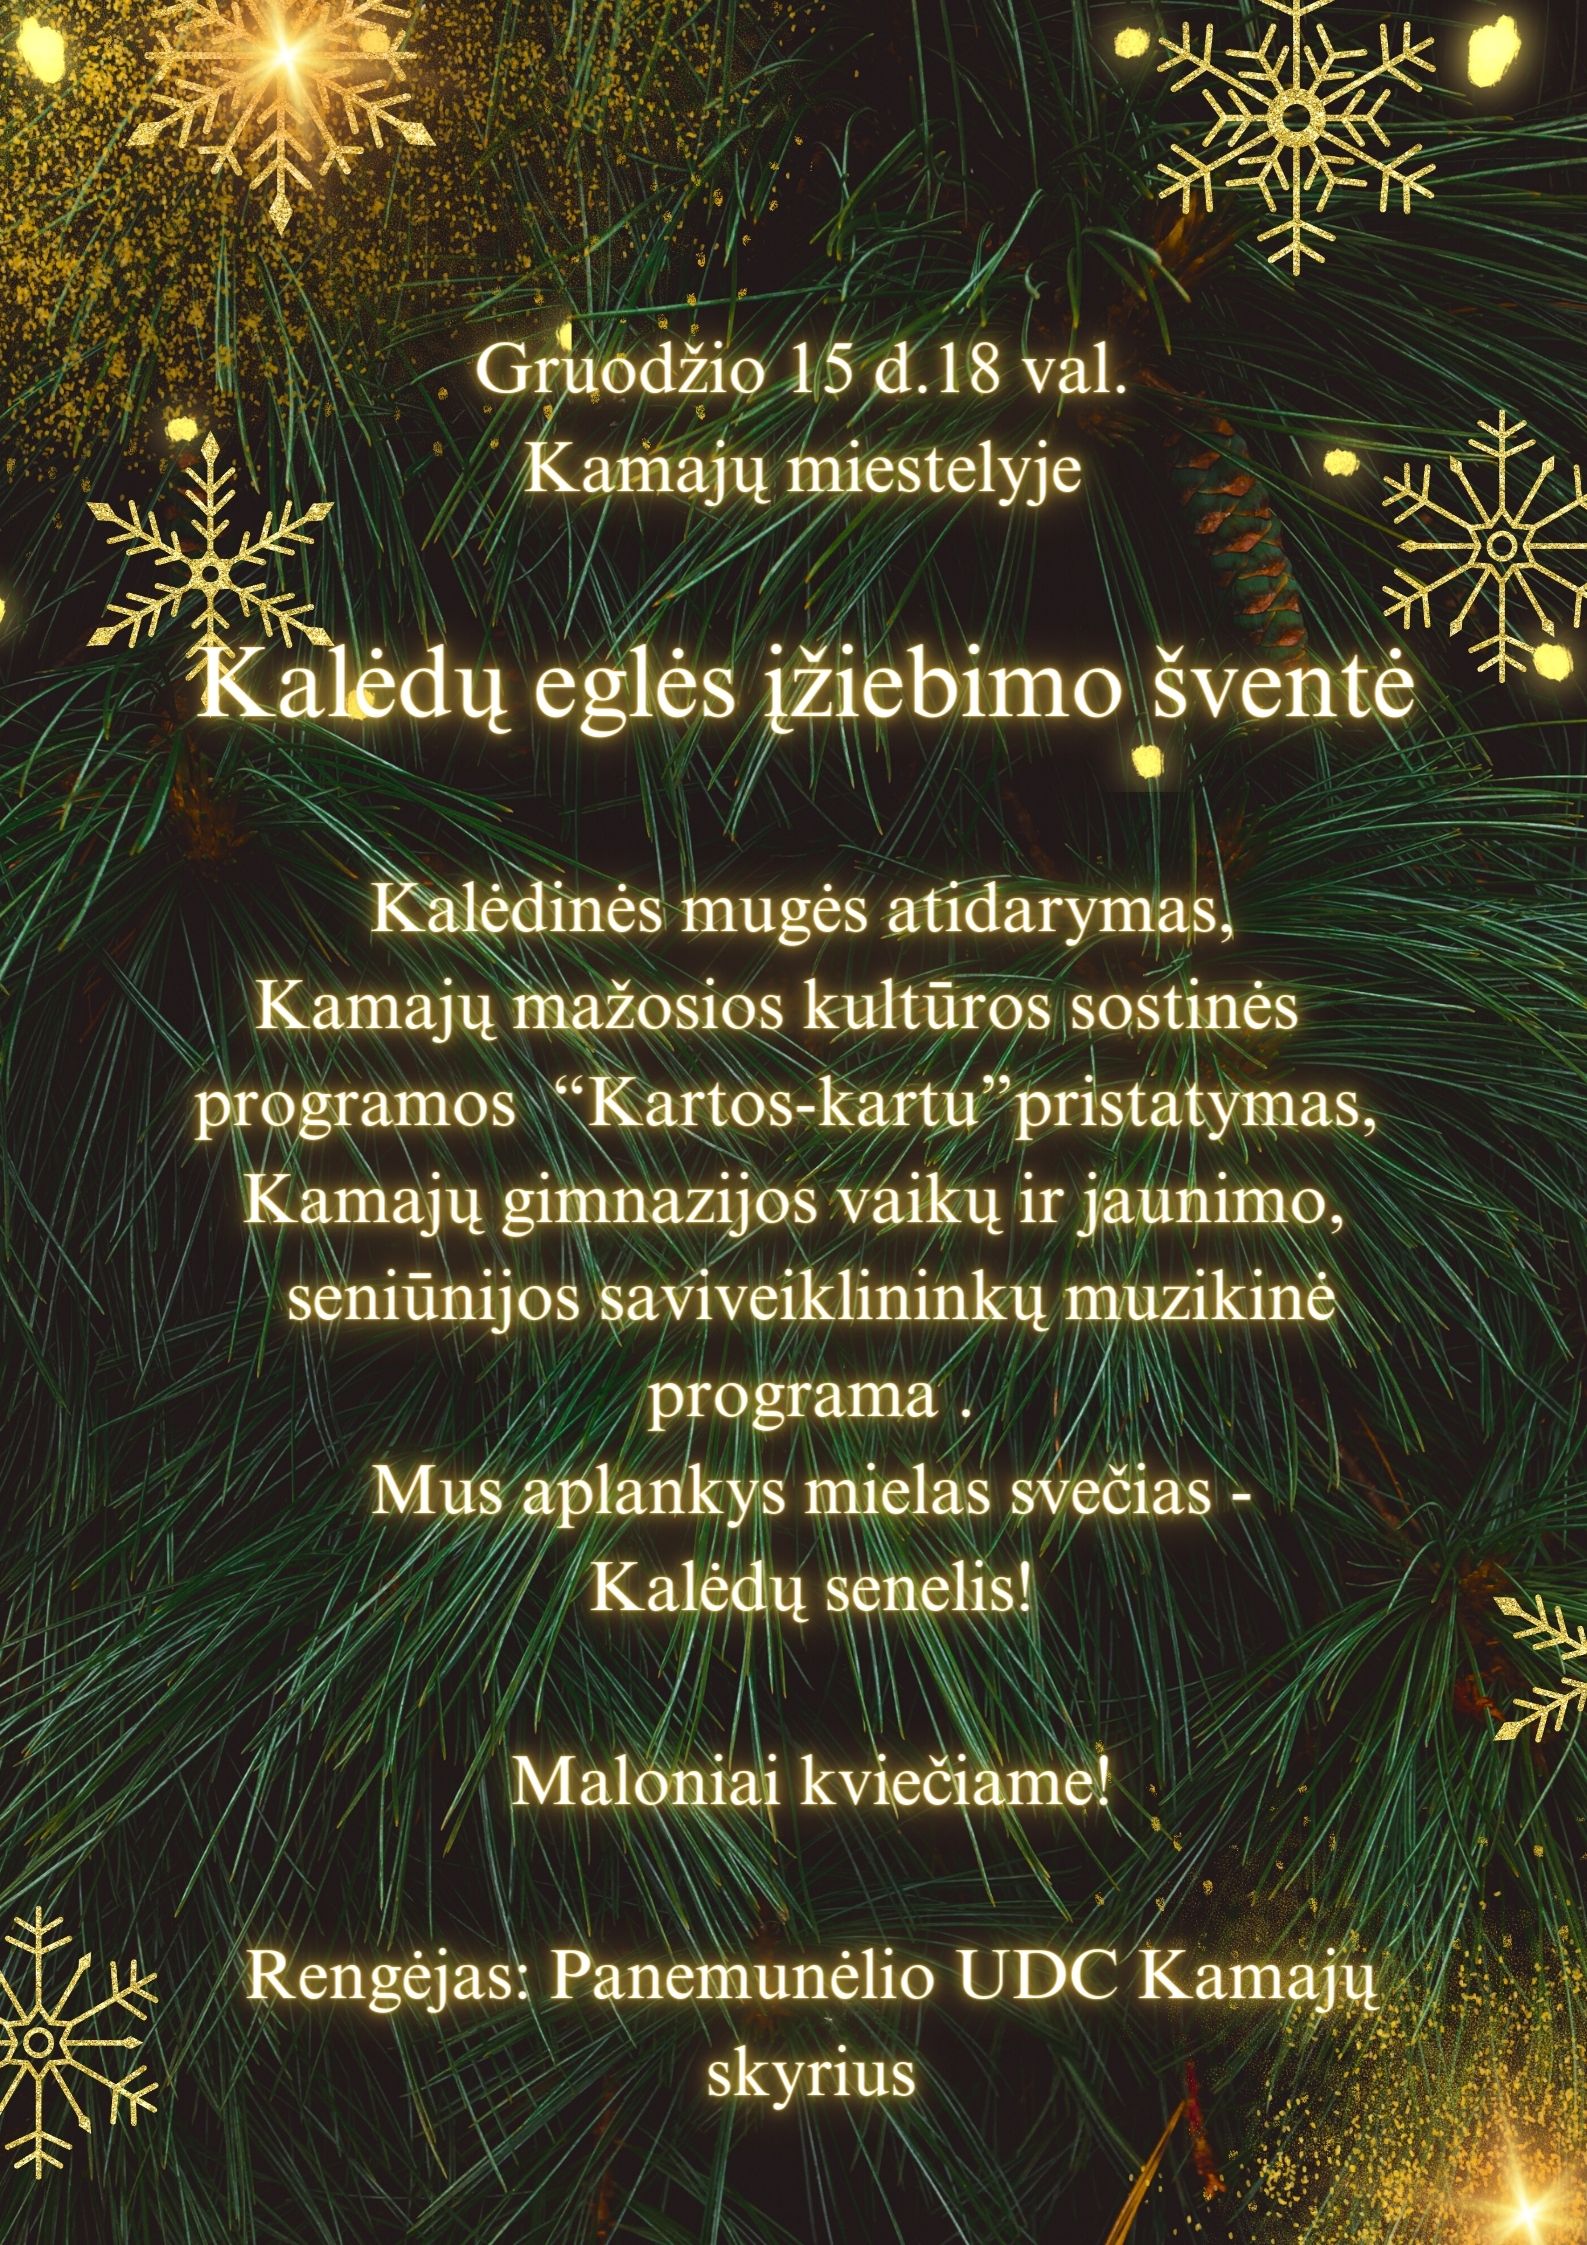 Jau netrukus Kalėdų eglė įsižiebs Kamajų miestelyje, kuris kitais metais taps Mažąja kultūros sos...